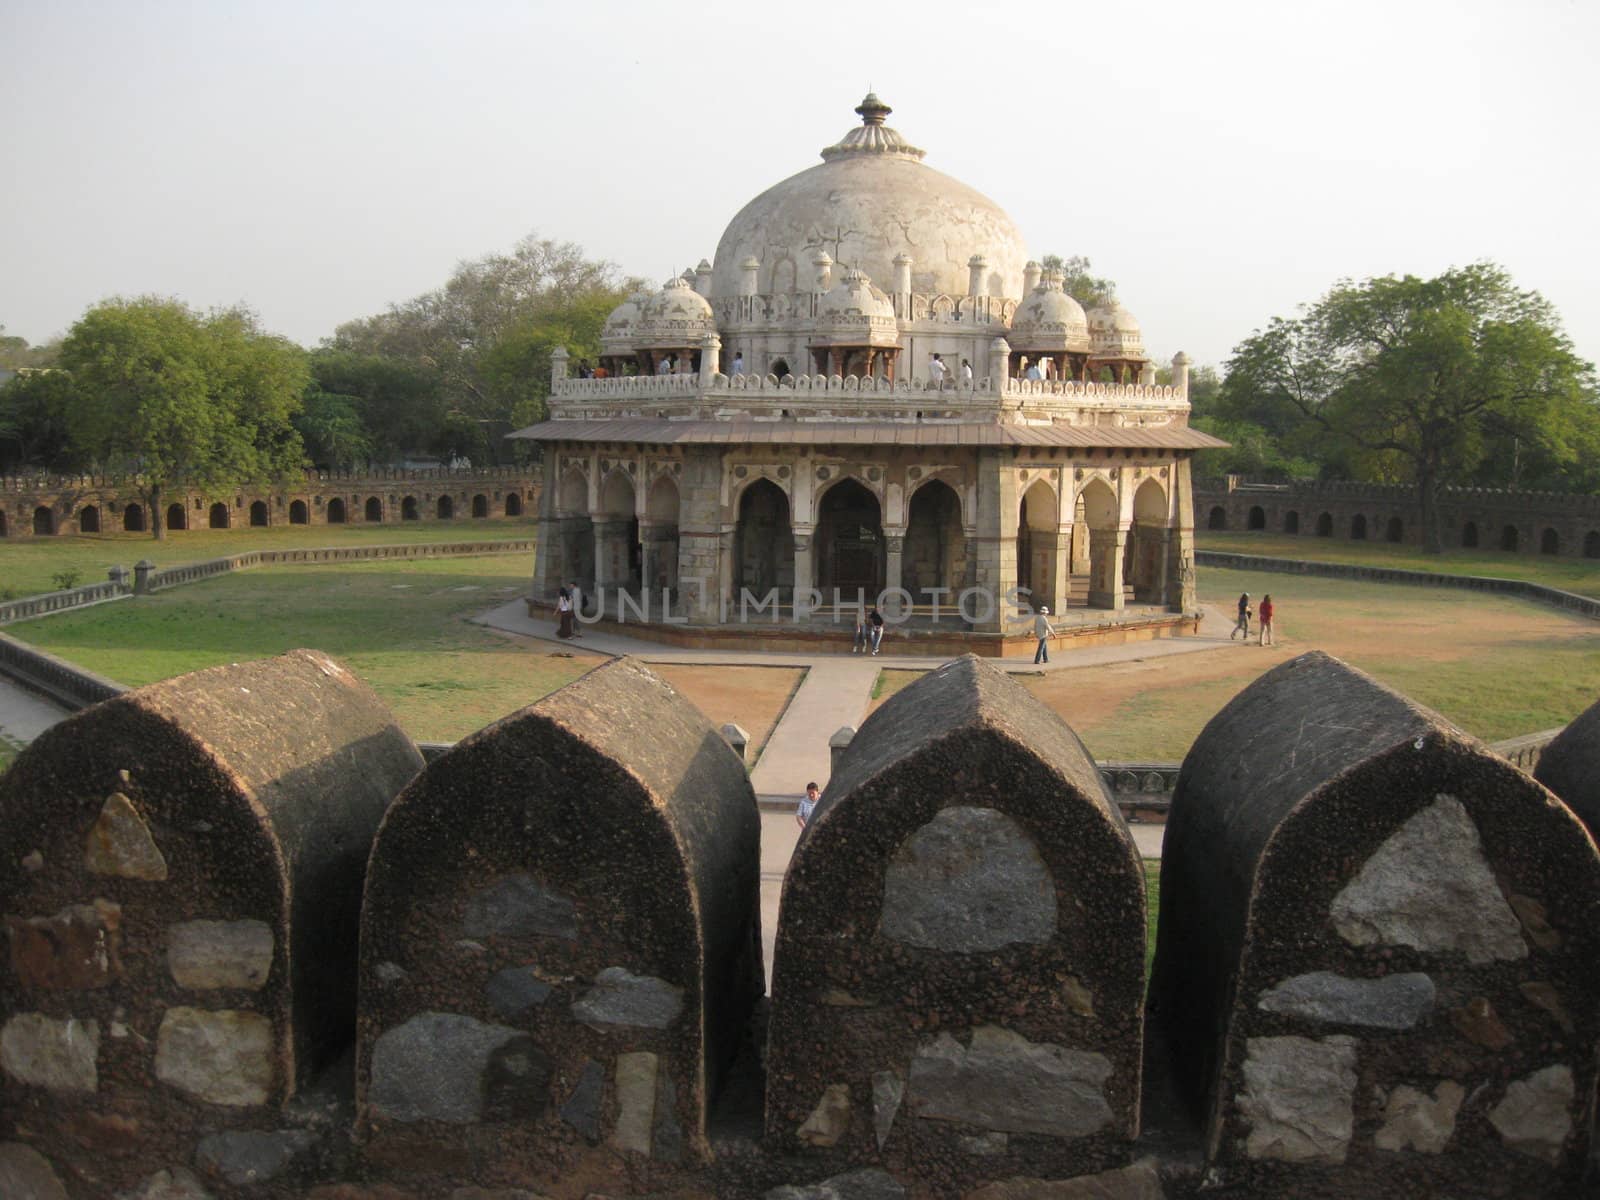 A side tomb at Humyan's Tomb, New Delhi, India